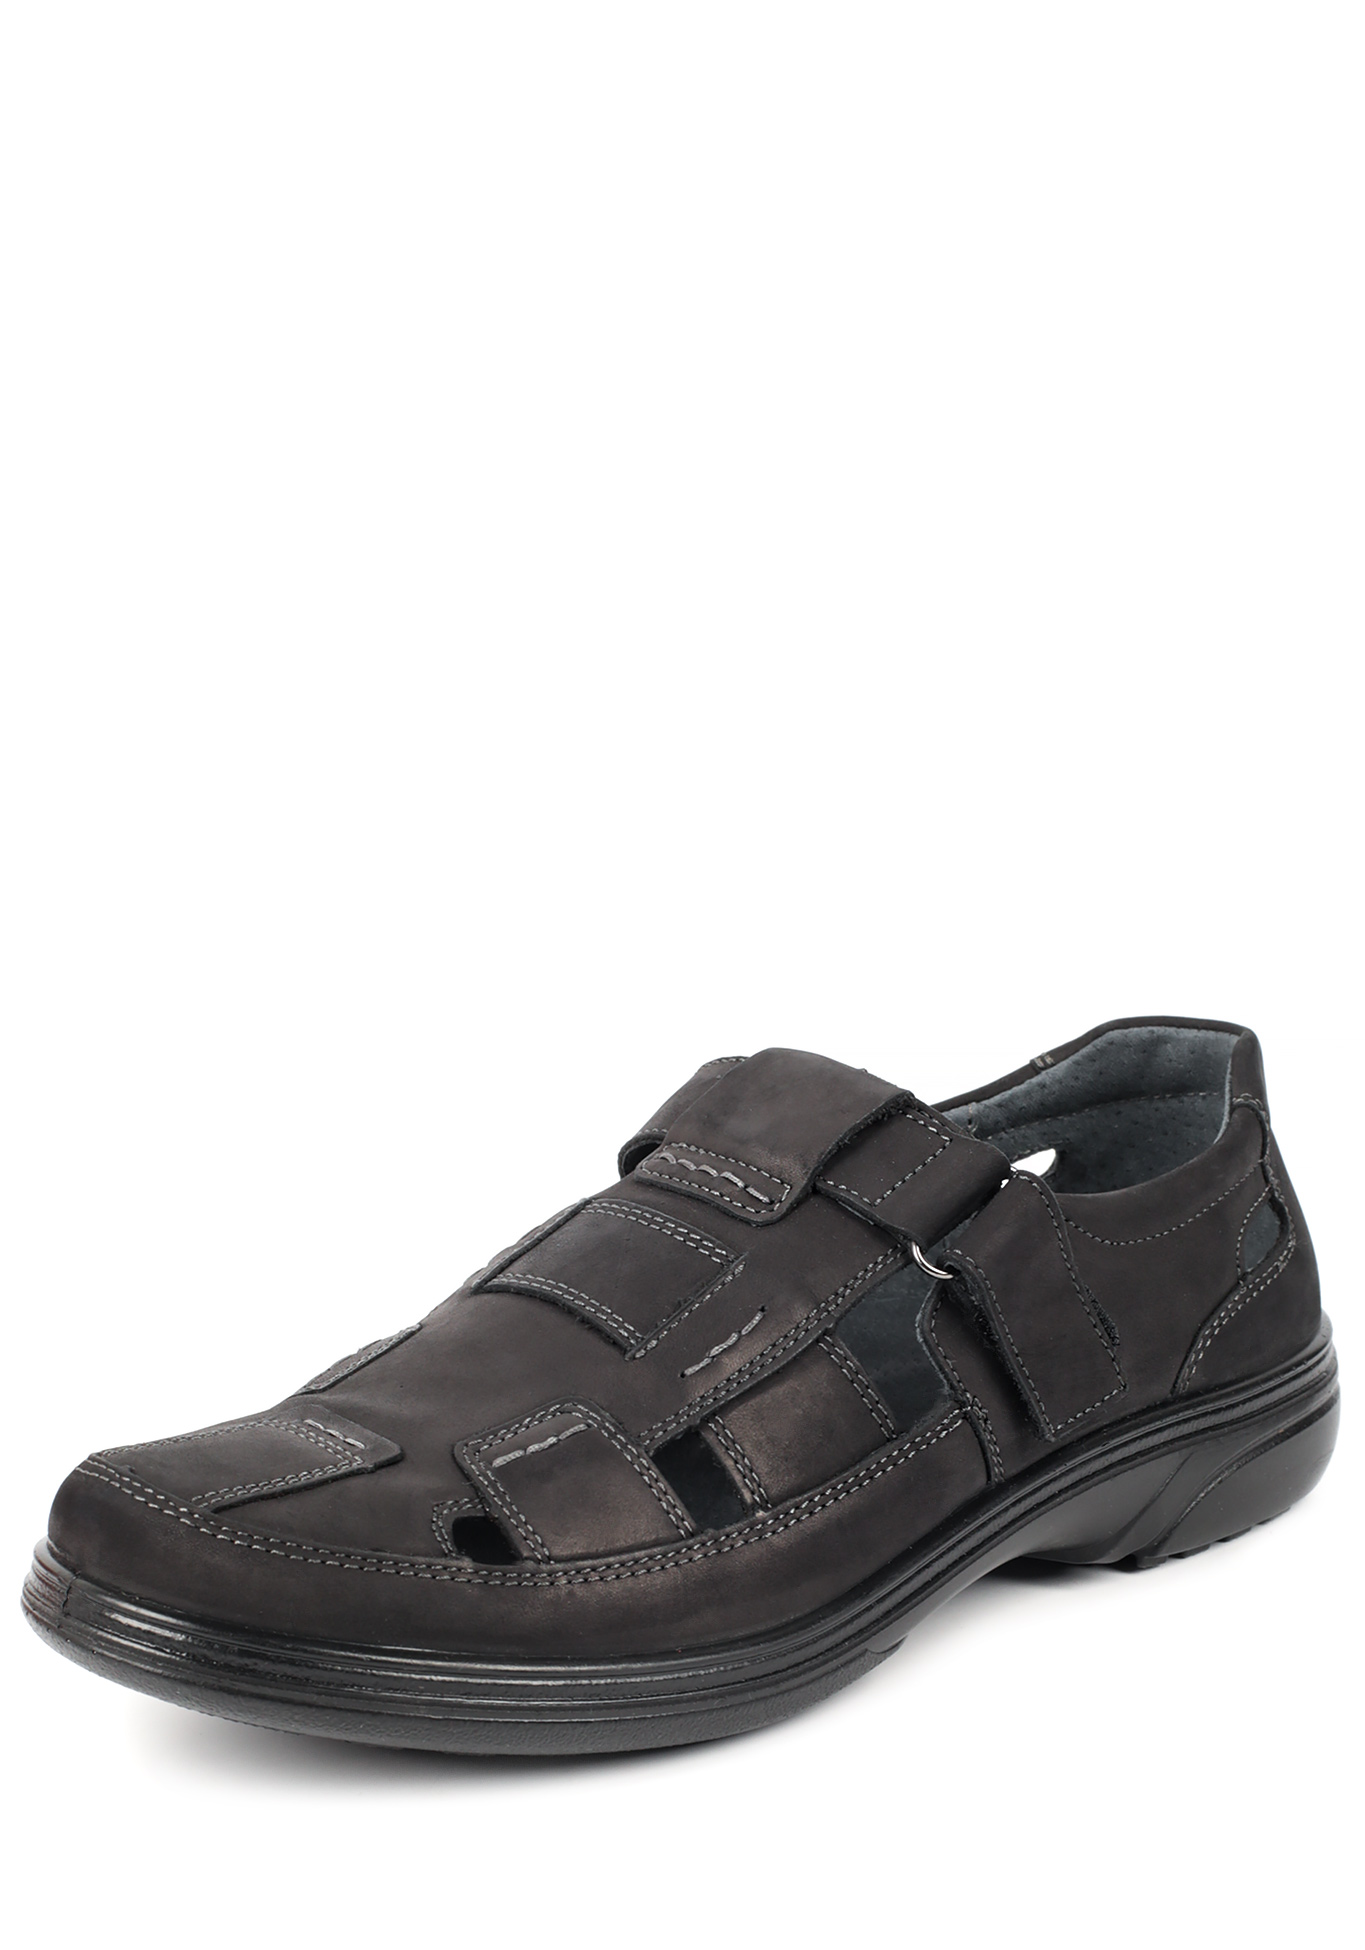 Туфли летние мужские "Ричи" Marko, размер 41, цвет черный